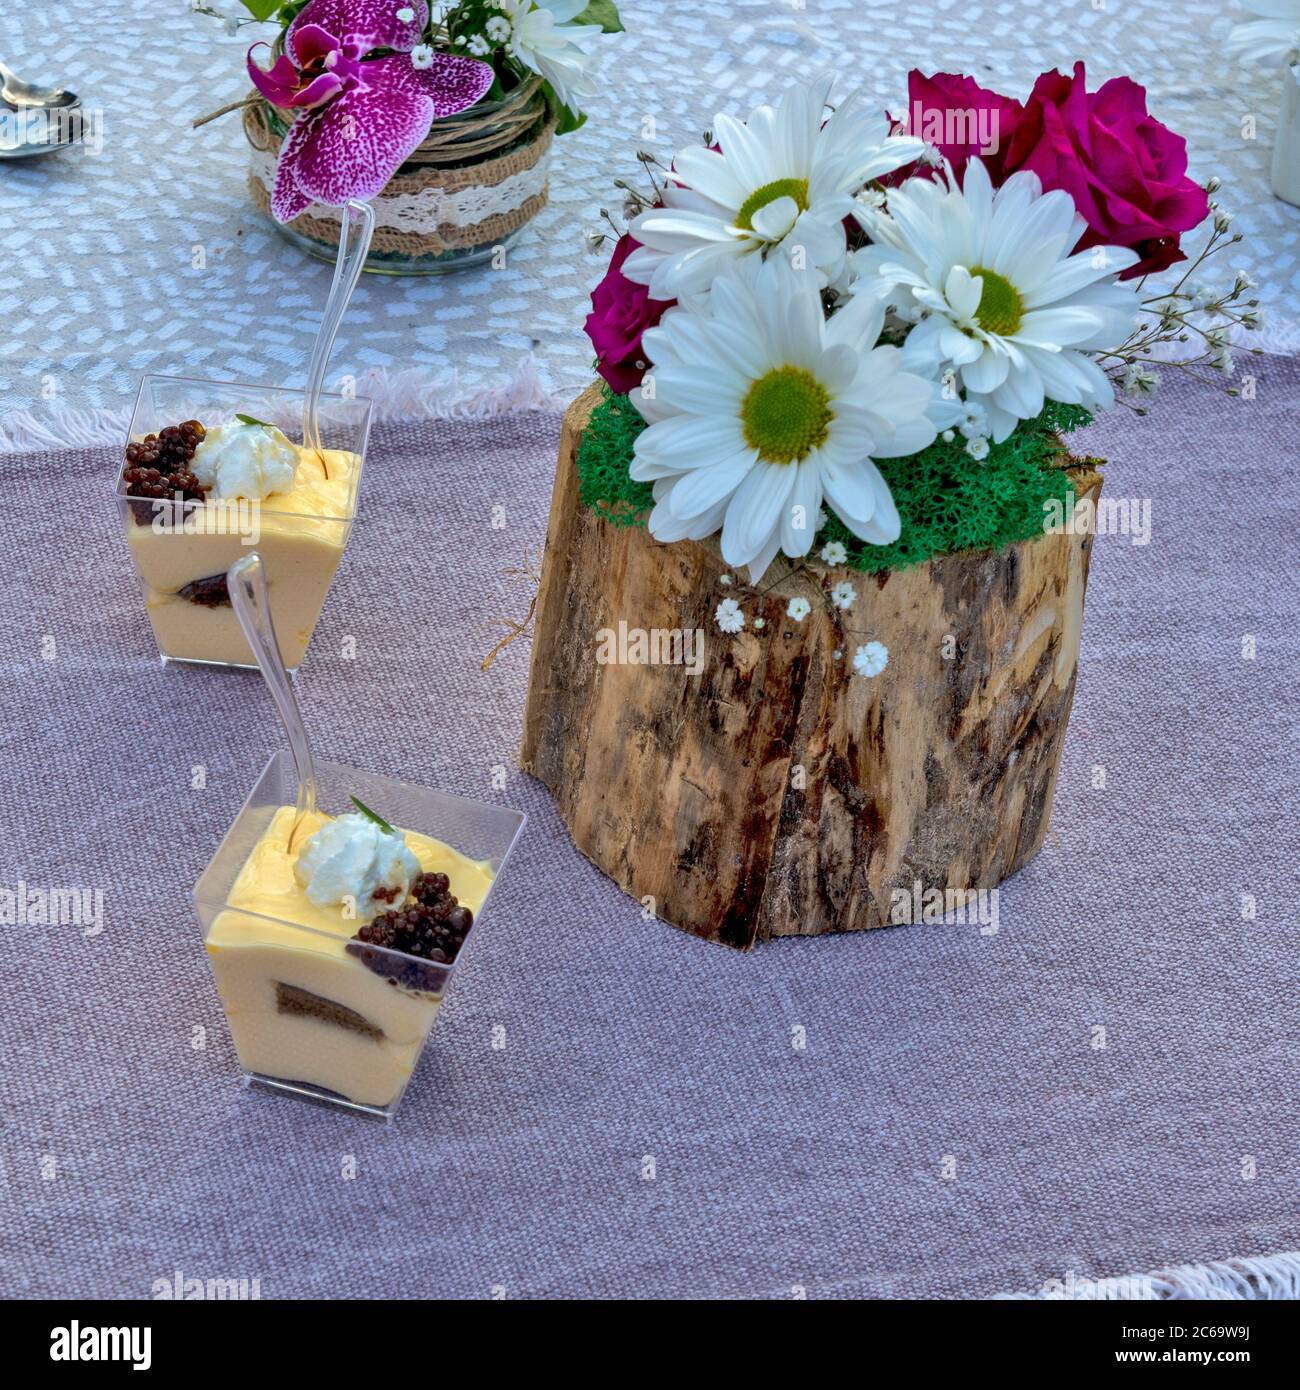 Fiori e budini messi sul tavolo come decorazione. Il budino è preparato per la degustazione e la valutazione, nonché per una disposizione floreale. Foto Stock